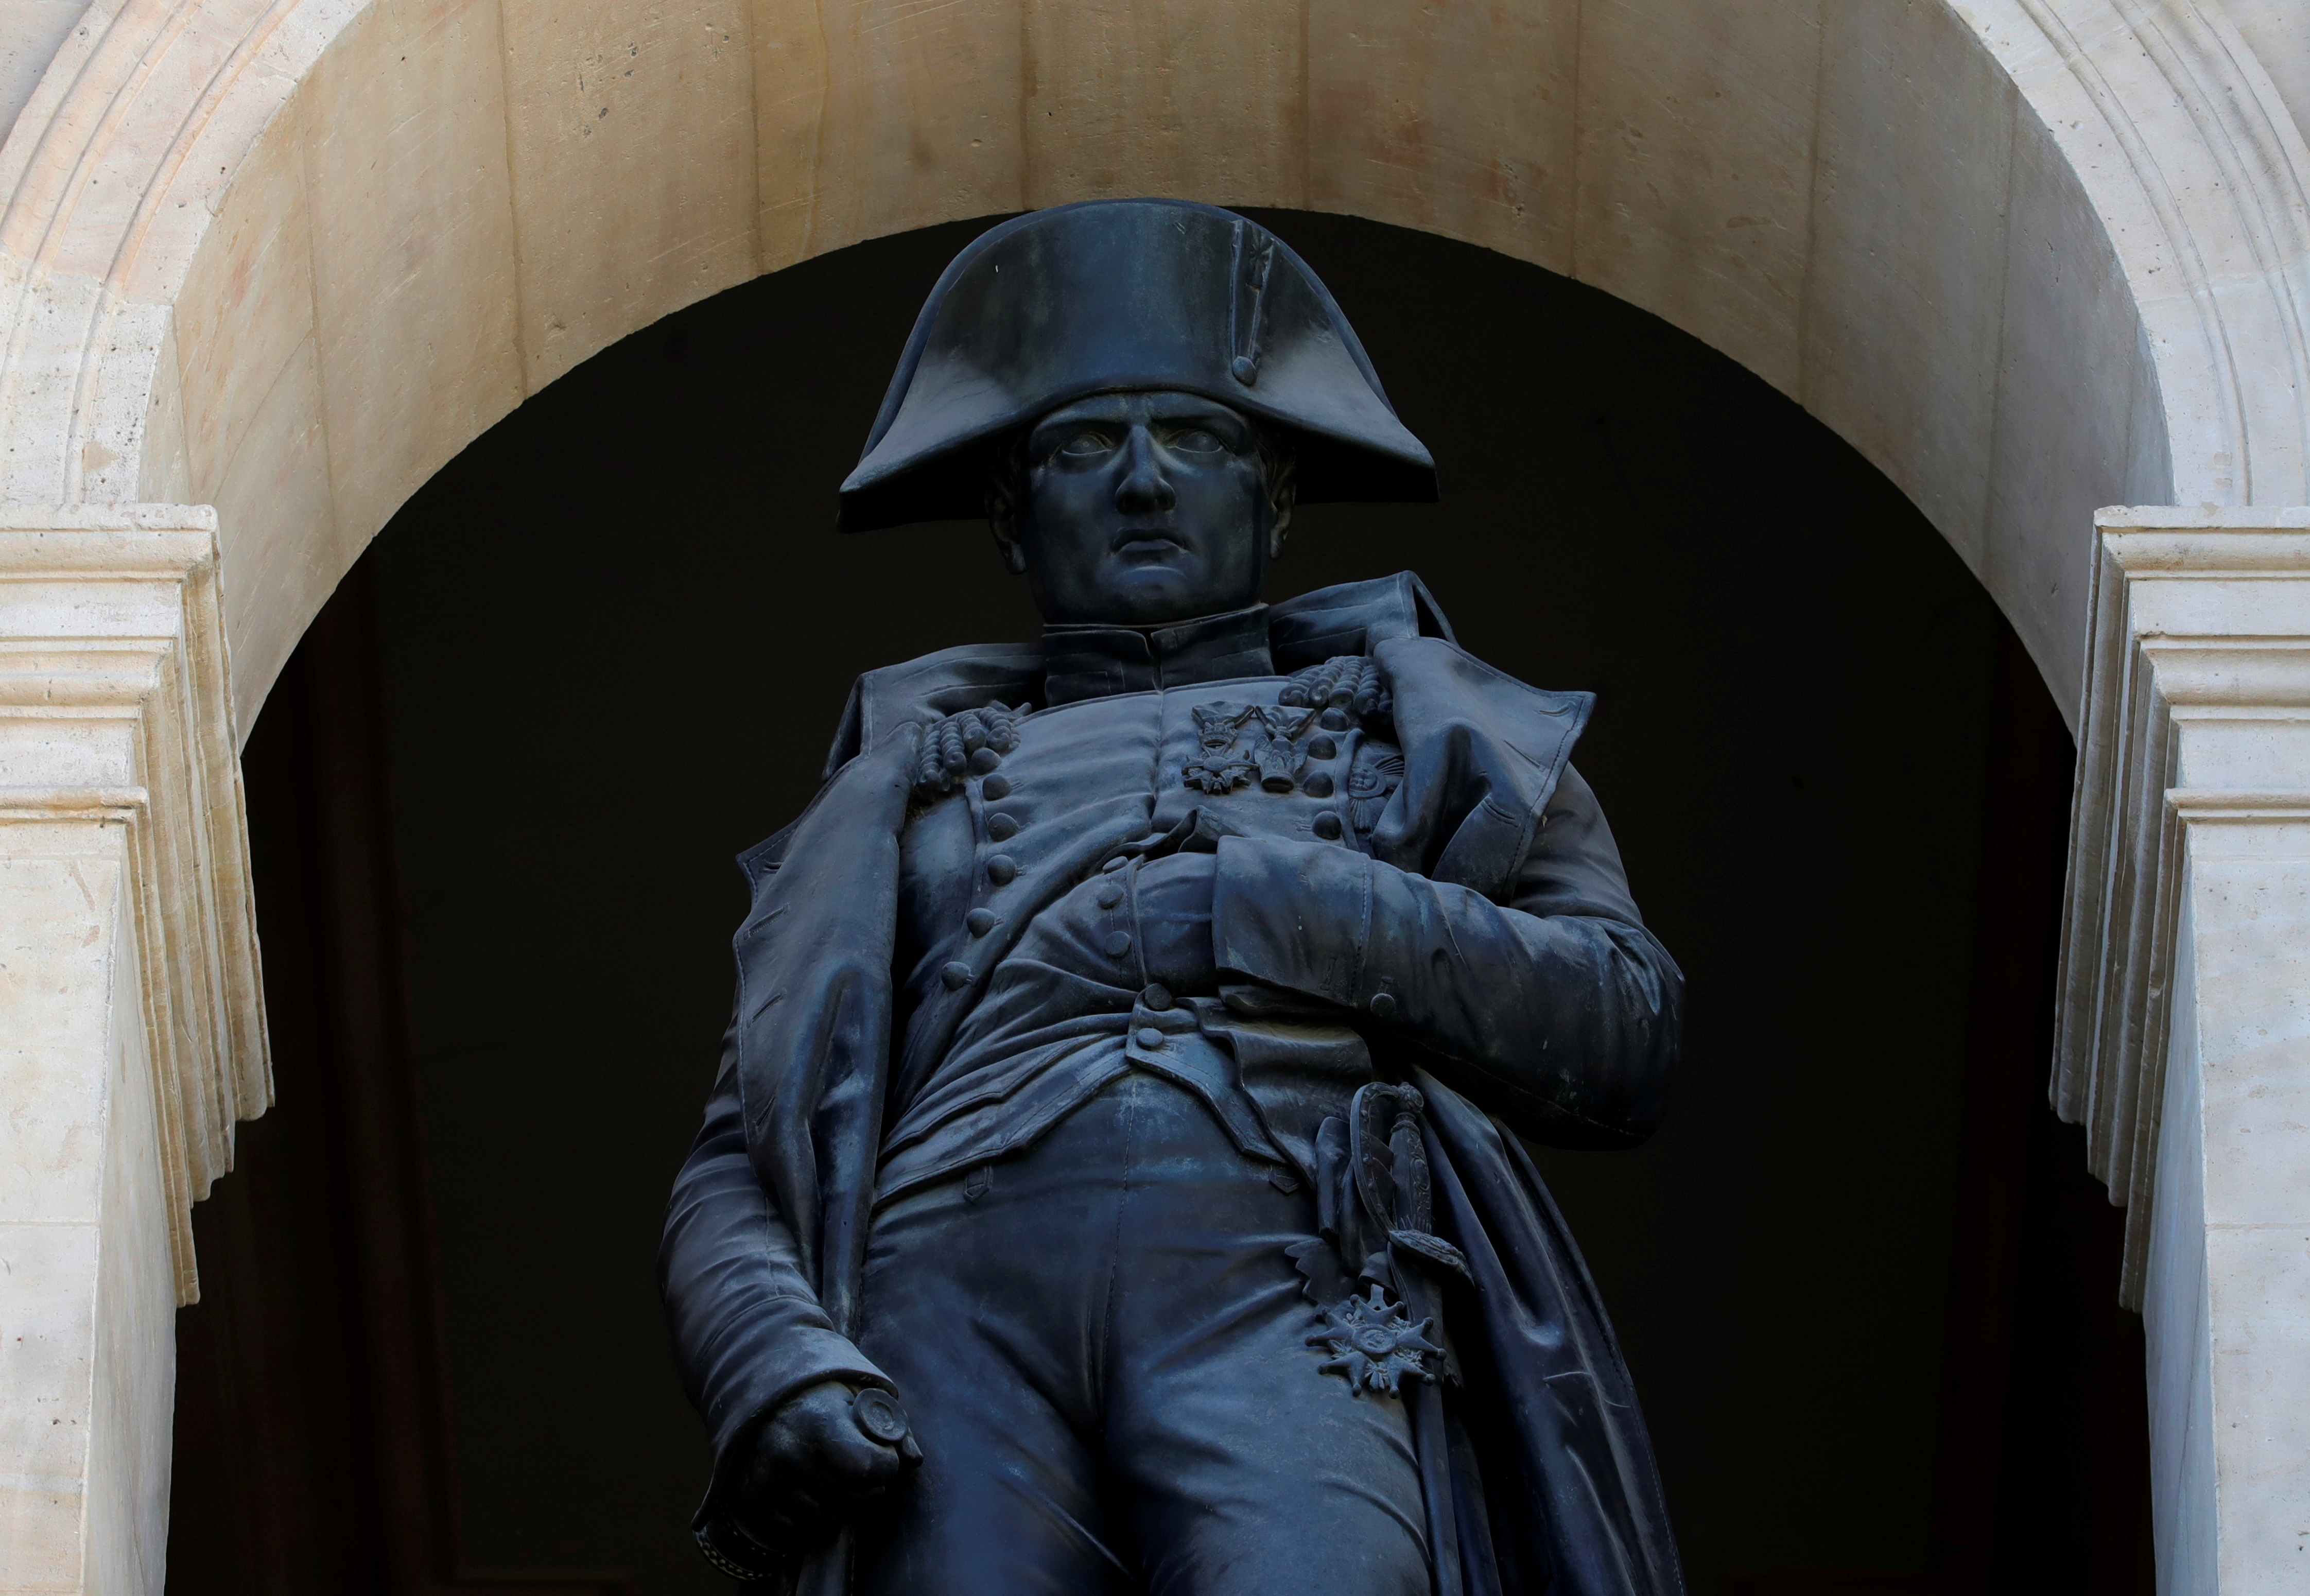 En París, el legado de Napoleón está a la vista. La estatua realizada por el escultor Emile Seurre, fabricada con cañones de los ejércitos ruso y austriaco, capturados en 1805, está ubicada en el patio del Hotel de los Inválidos (REUTERS/Sarah Meyssonnier/File Photo)